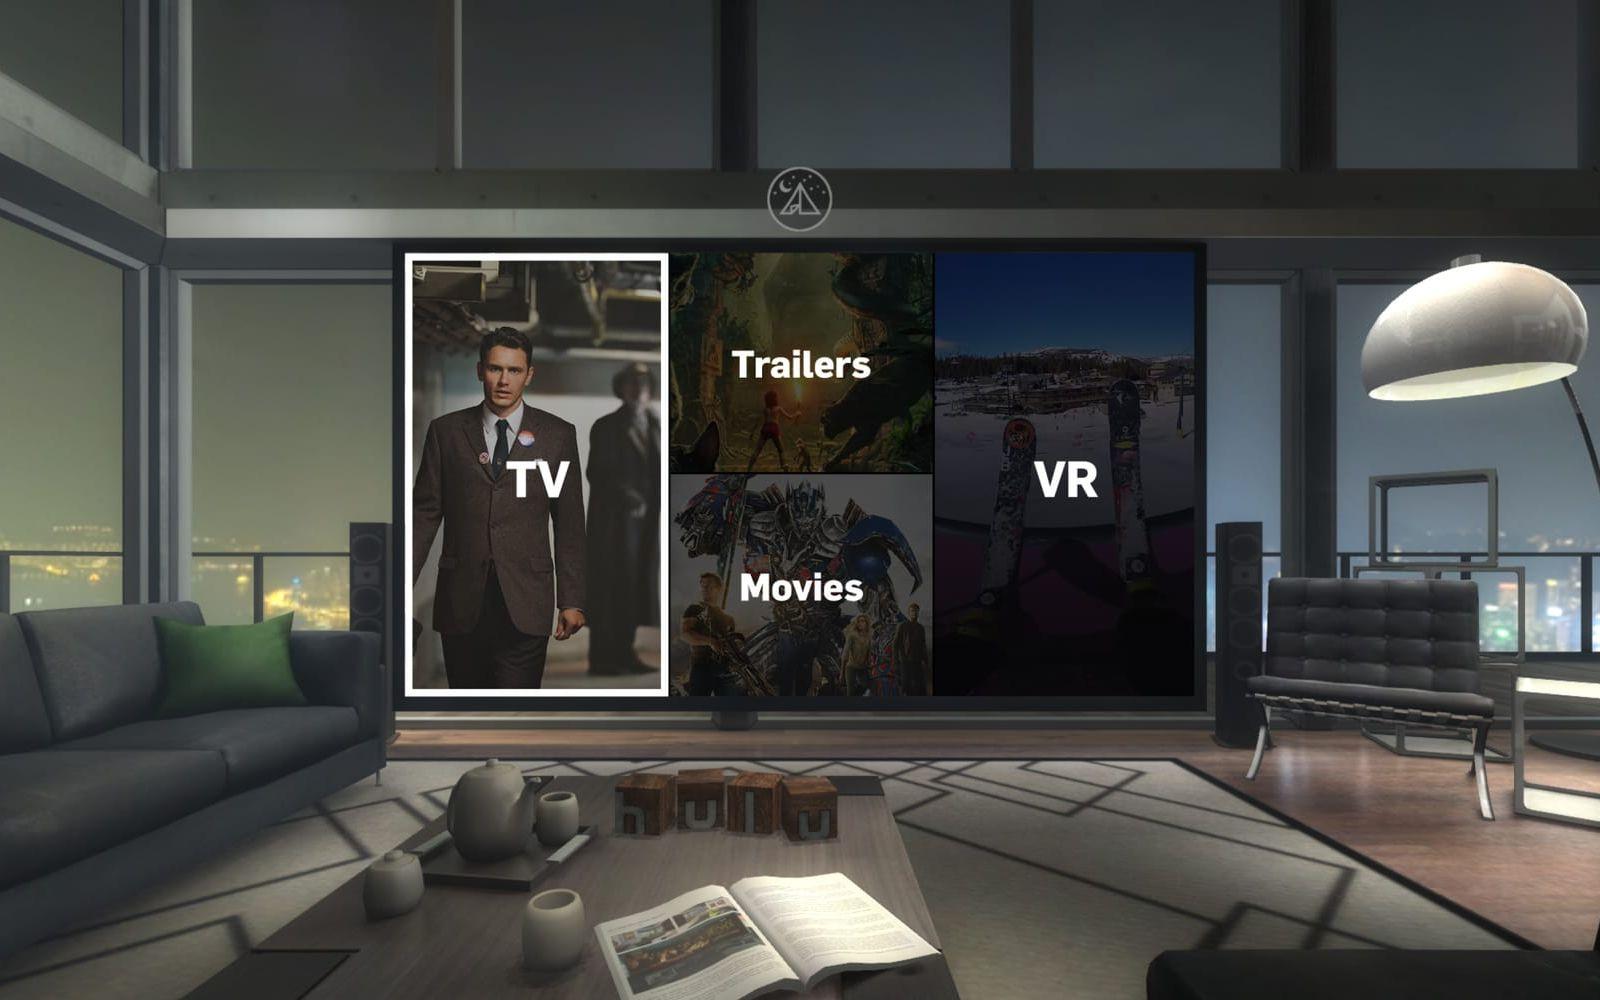 <strong>KOLLA PÅ FILM MED VÄNNER: </strong>VR-företag erbjuder redan idag möjligheten att hänga med kompisar i virtuella rum där ni kan titta på film ”tillsammans”. Oklart vem som får hålla i fjärrkontrollen. Foto: Hulu